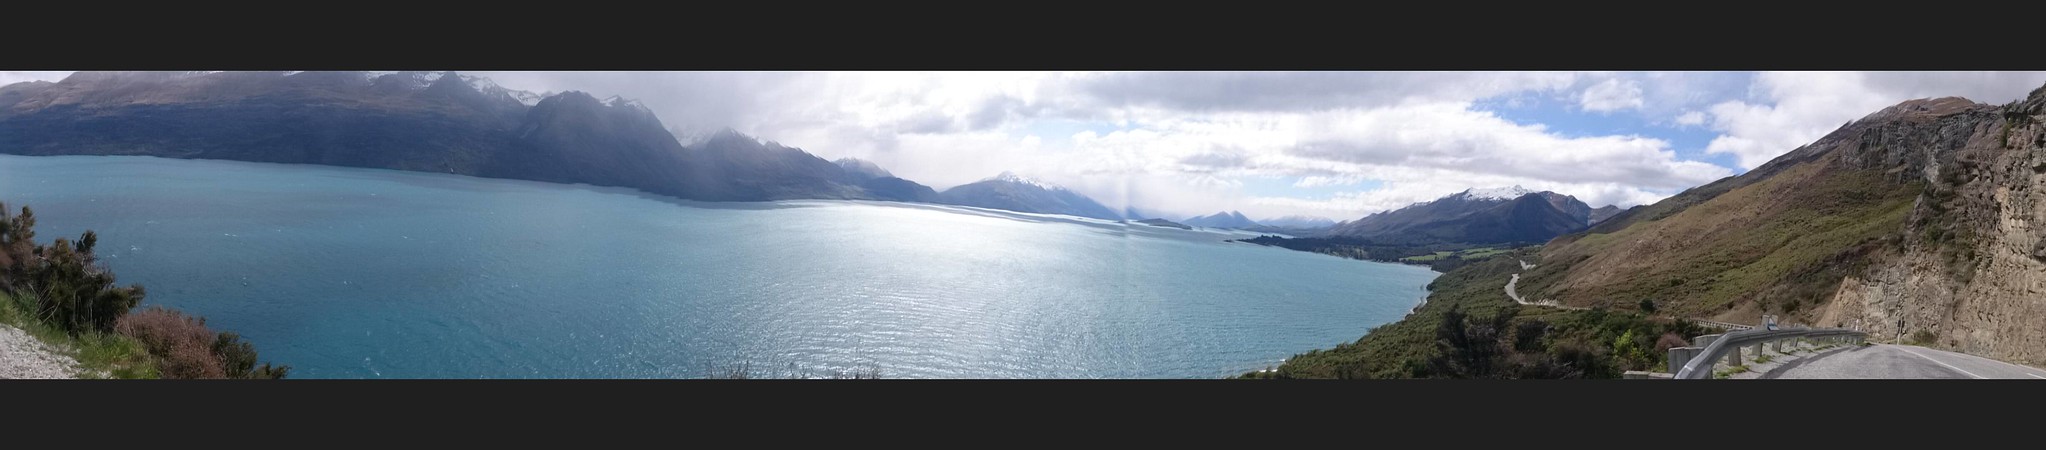 Nueva Zelanda, Aotearoa: El viaje de mi vida por la Tierra Media - Blogs de Nueva Zelanda - Día 19 - 18/10/15: Queenstown, Kawarau River, Glenorchy, Paradise y cumpleaños (69)